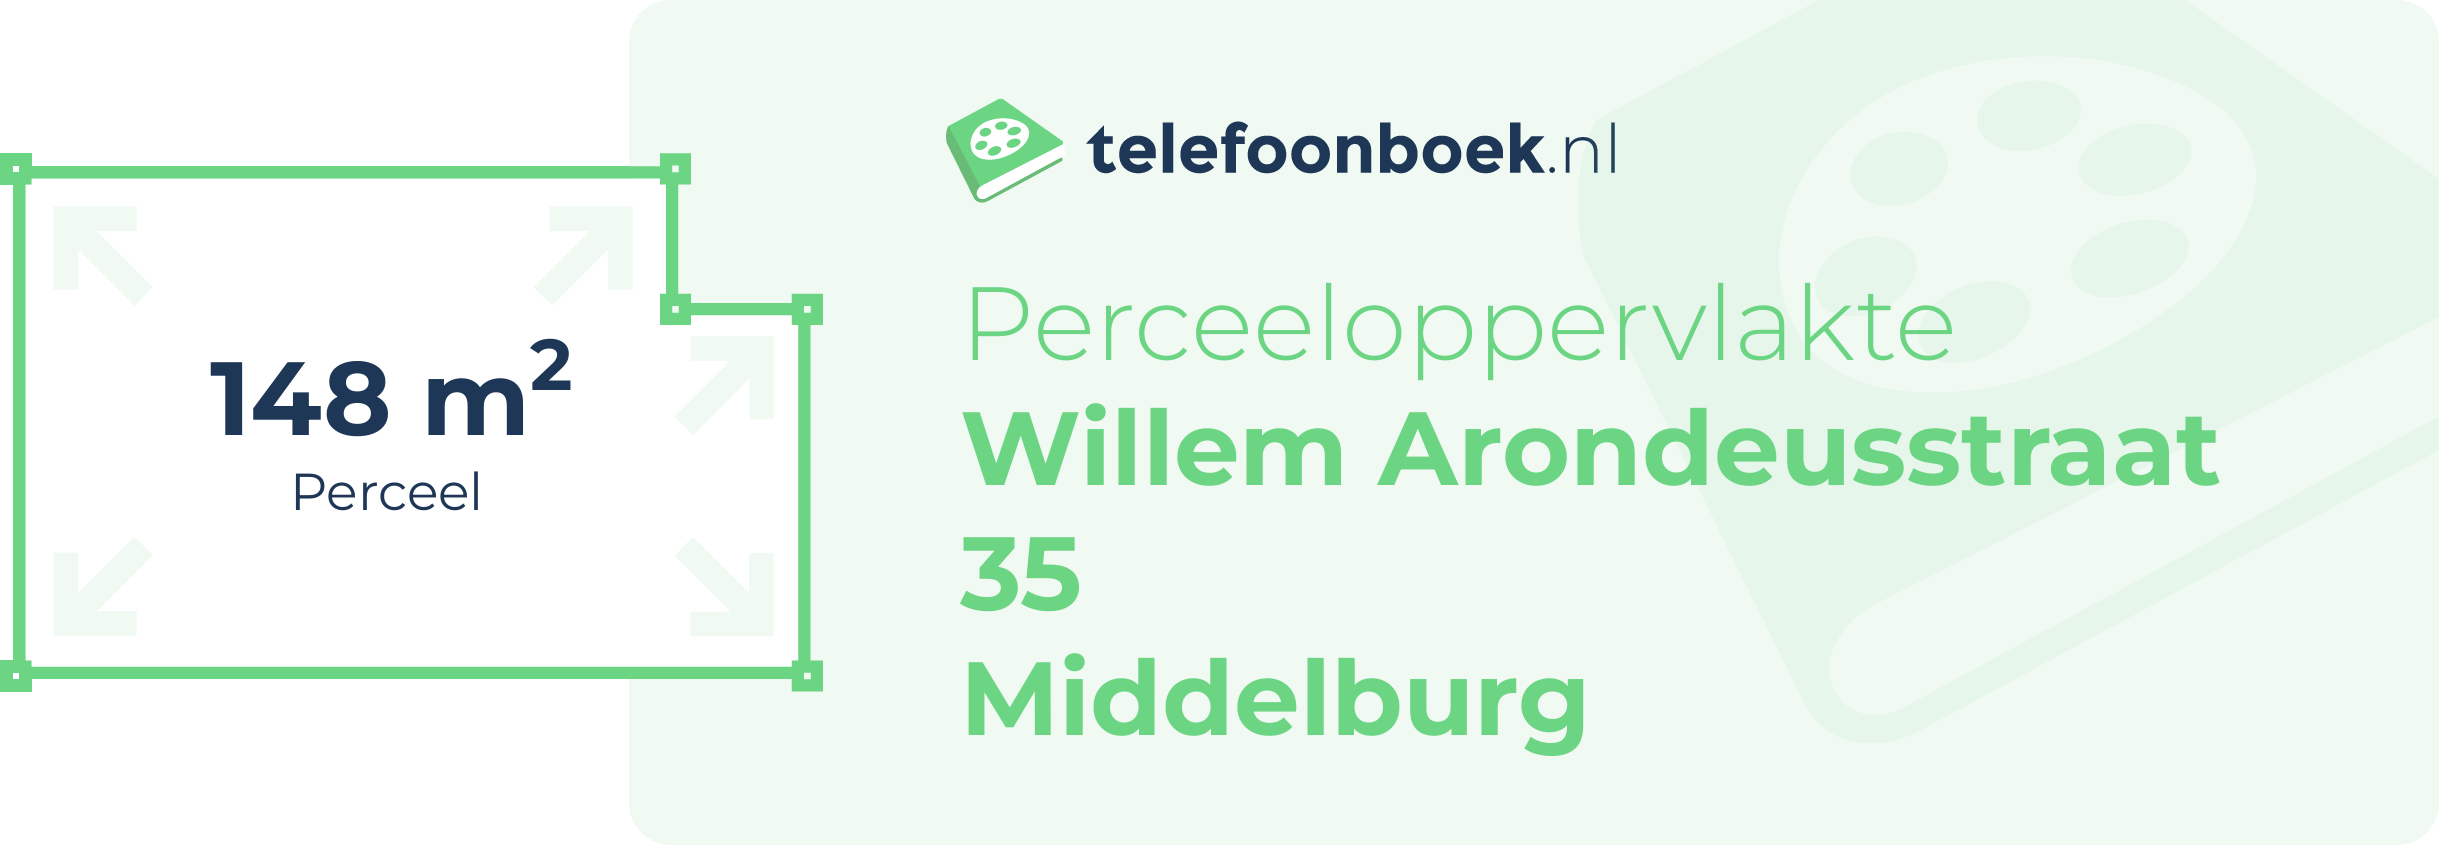 Perceeloppervlakte Willem Arondeusstraat 35 Middelburg